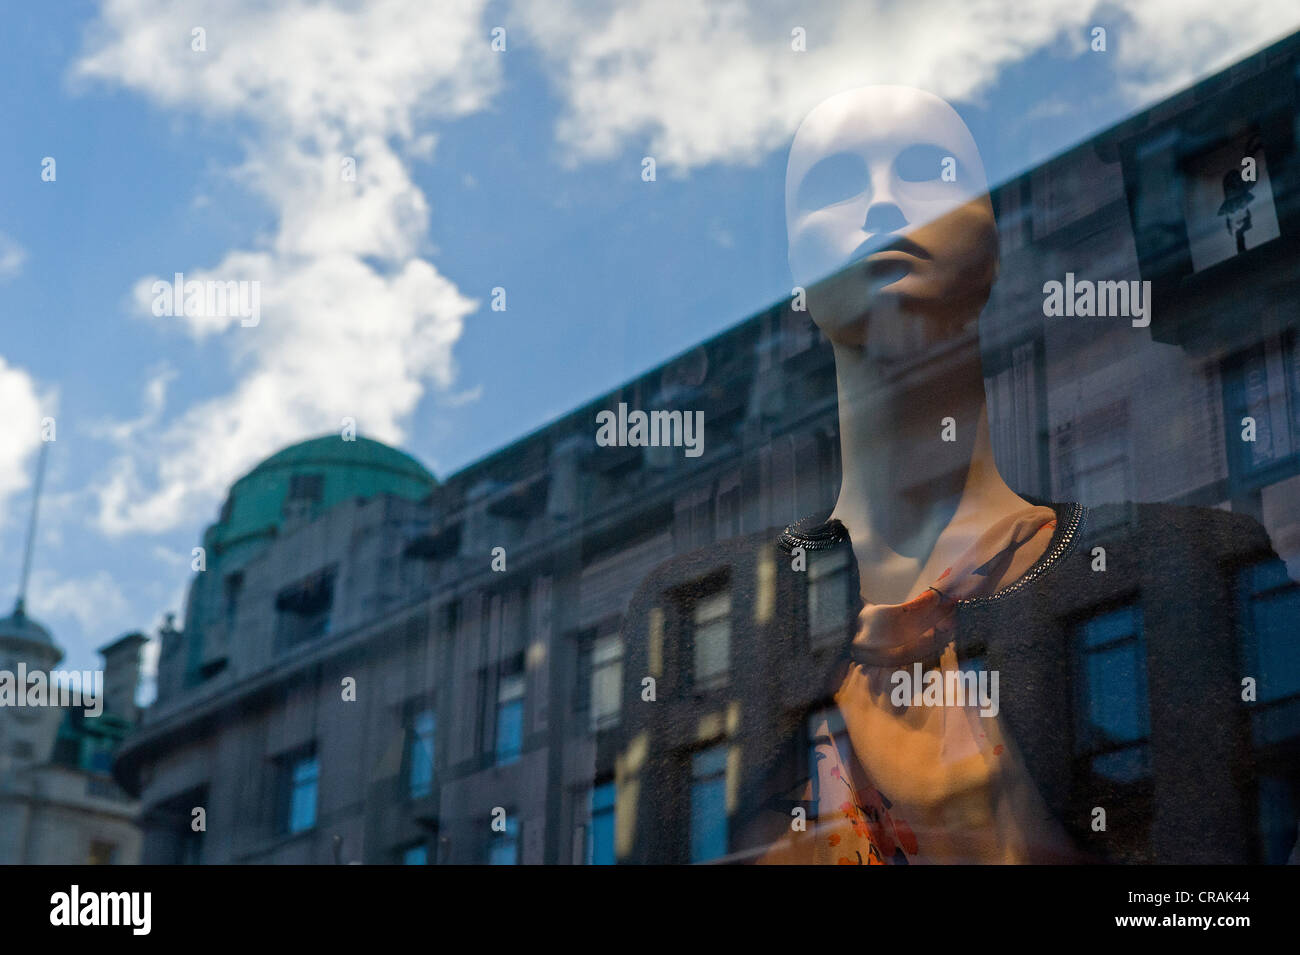 Mannequin en afficher la fenêtre et réflexions de bâtiments, Oxford Street, Londres, Angleterre, Royaume-Uni, Europe Banque D'Images